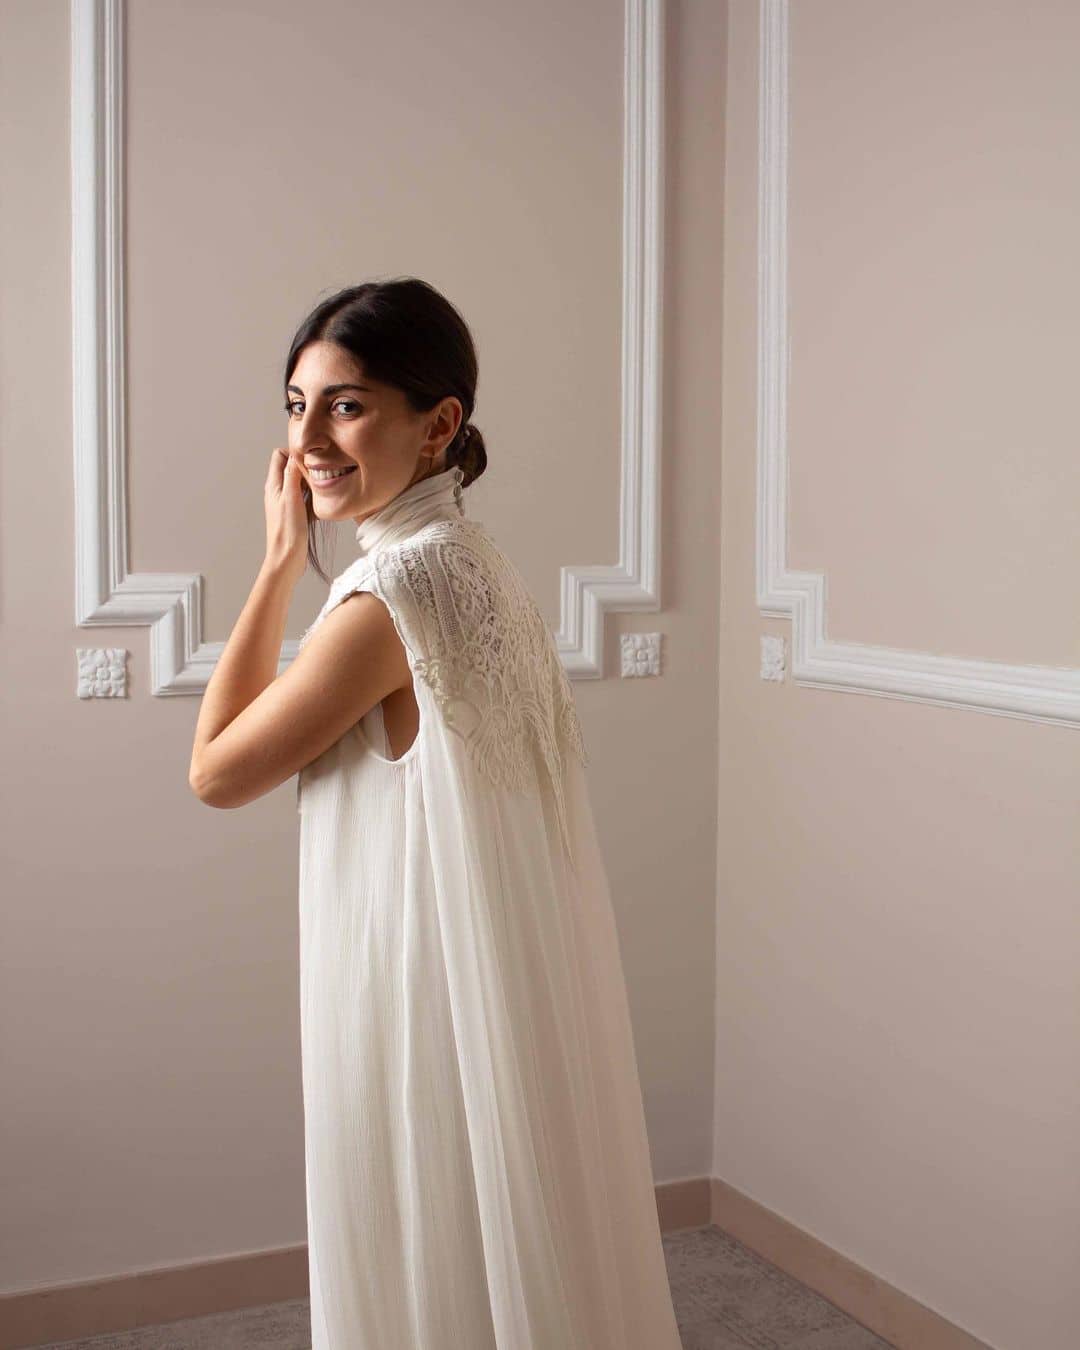 Vestido de boda Alex Vidal Atelier, destacando la sencillez y elegancia